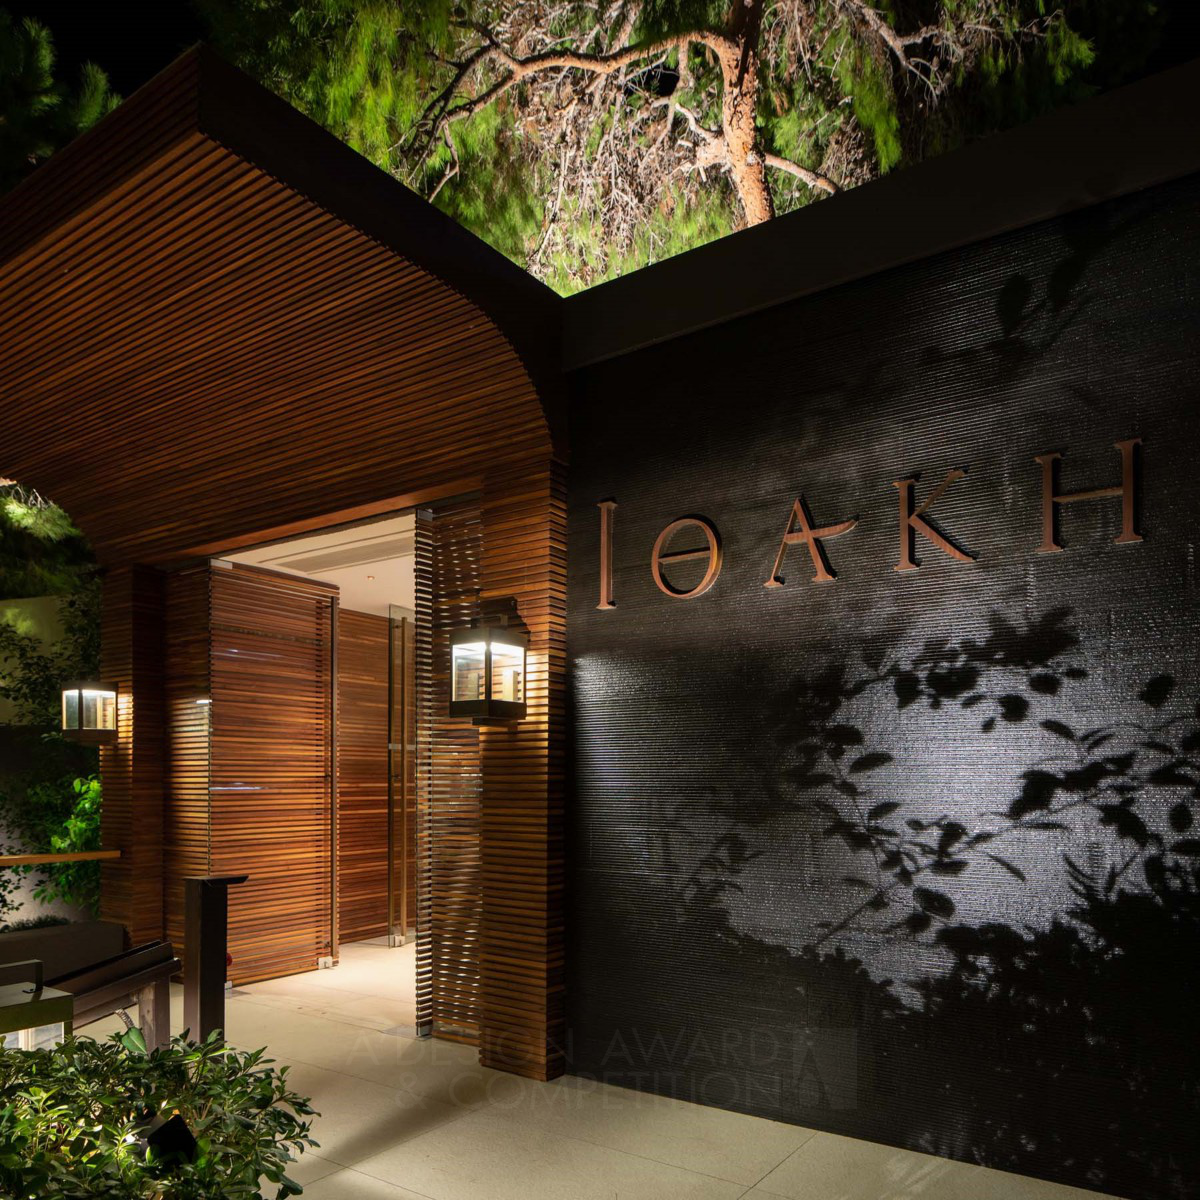 Ithaki Restaurant: Un Diseño de Iluminación que Combina Lujo y Comodidad